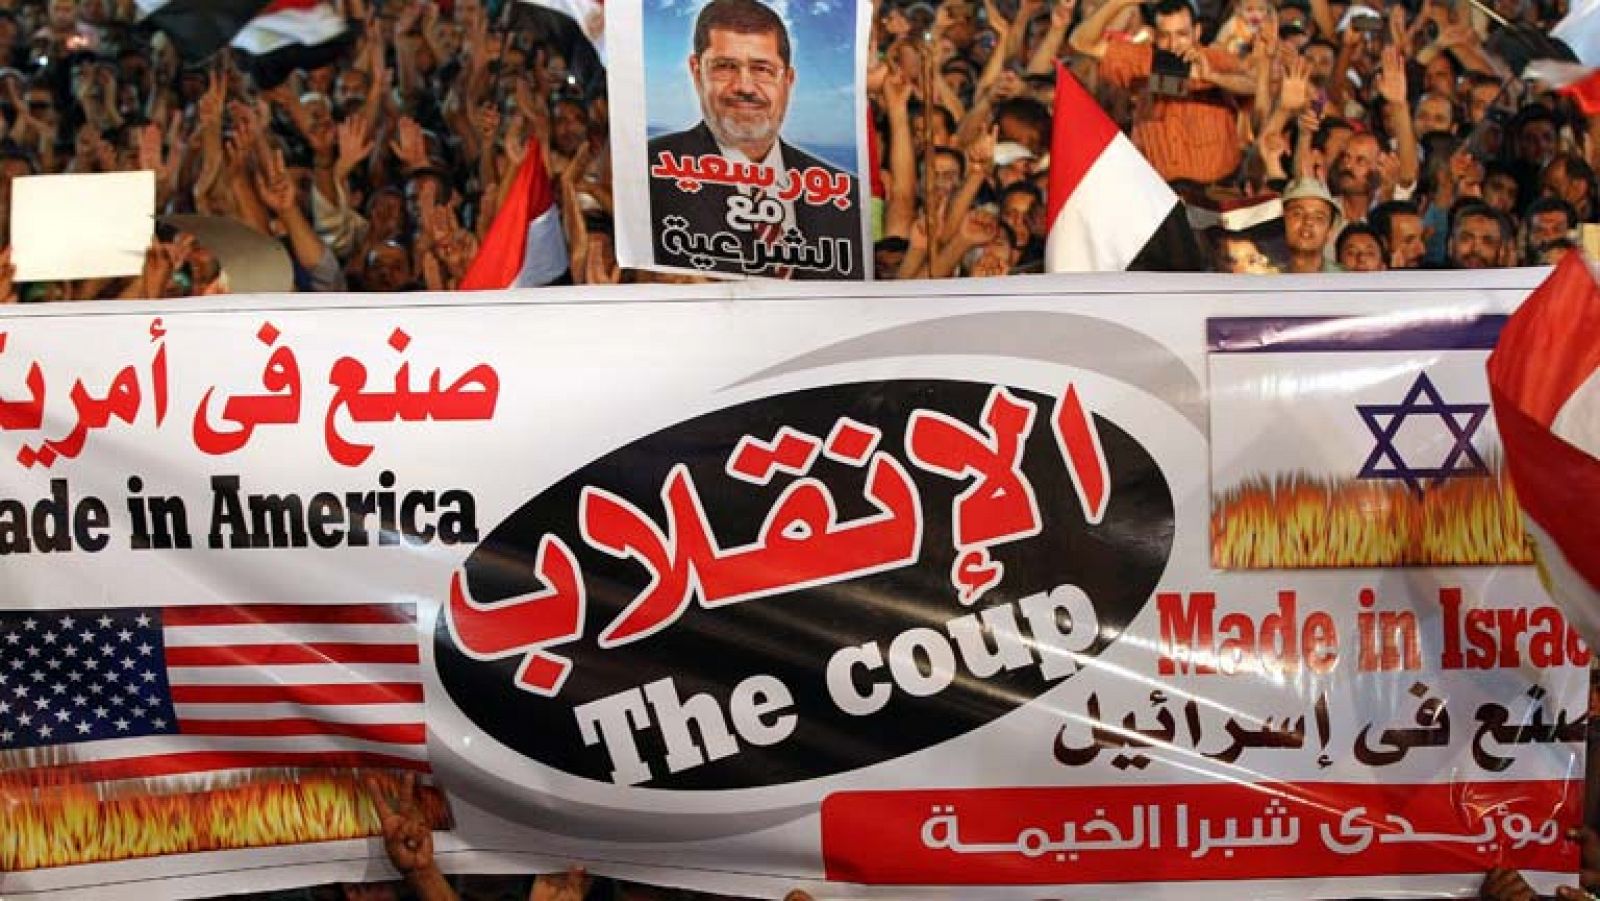 Continúa la tensión en Egipto, su presidente interino Adlí Mansur hace un llamamiento a la calma